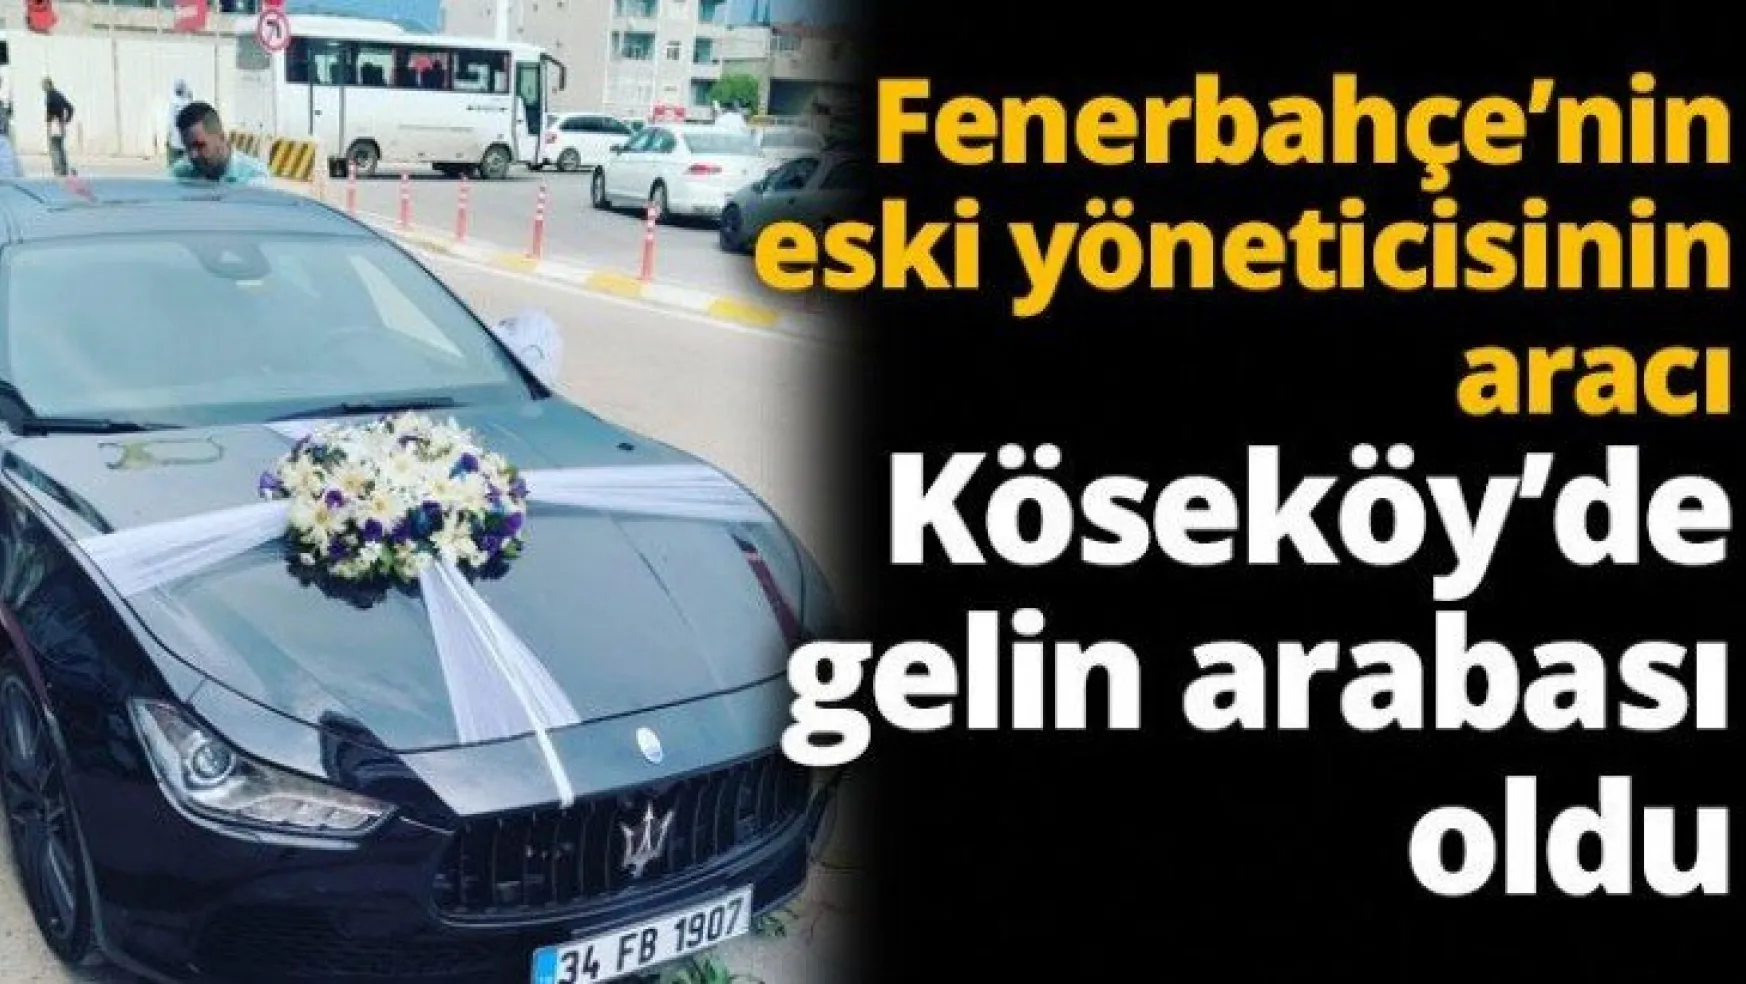 Fenerbahçe eski yöneticisinin aracı Köseköy'e gelin arabası olarak gitti